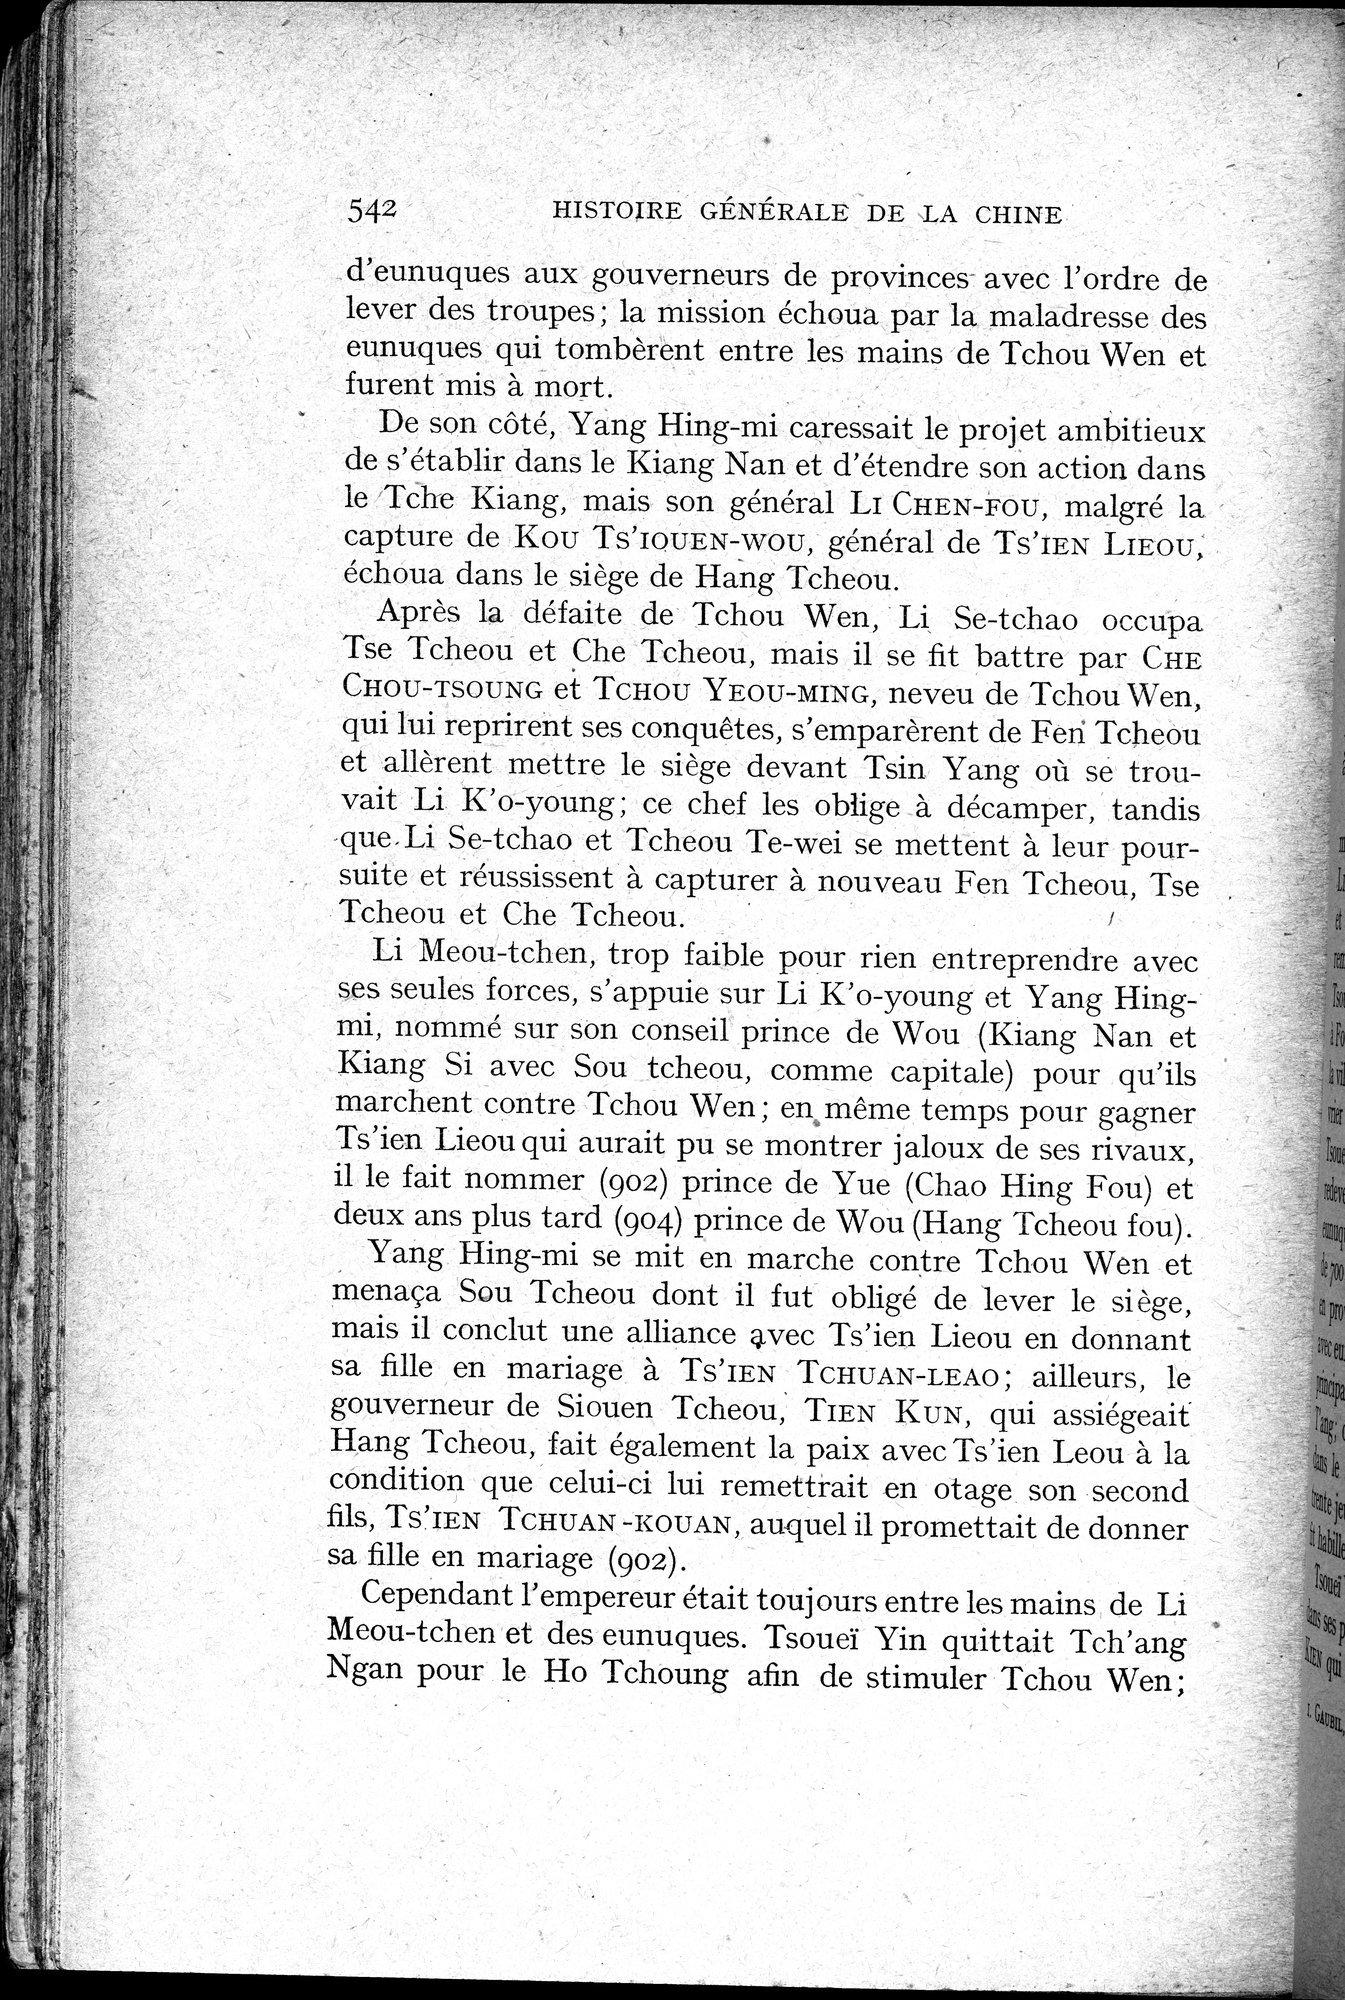 Histoire Générale de la Chine : vol.1 / Page 544 (Grayscale High Resolution Image)